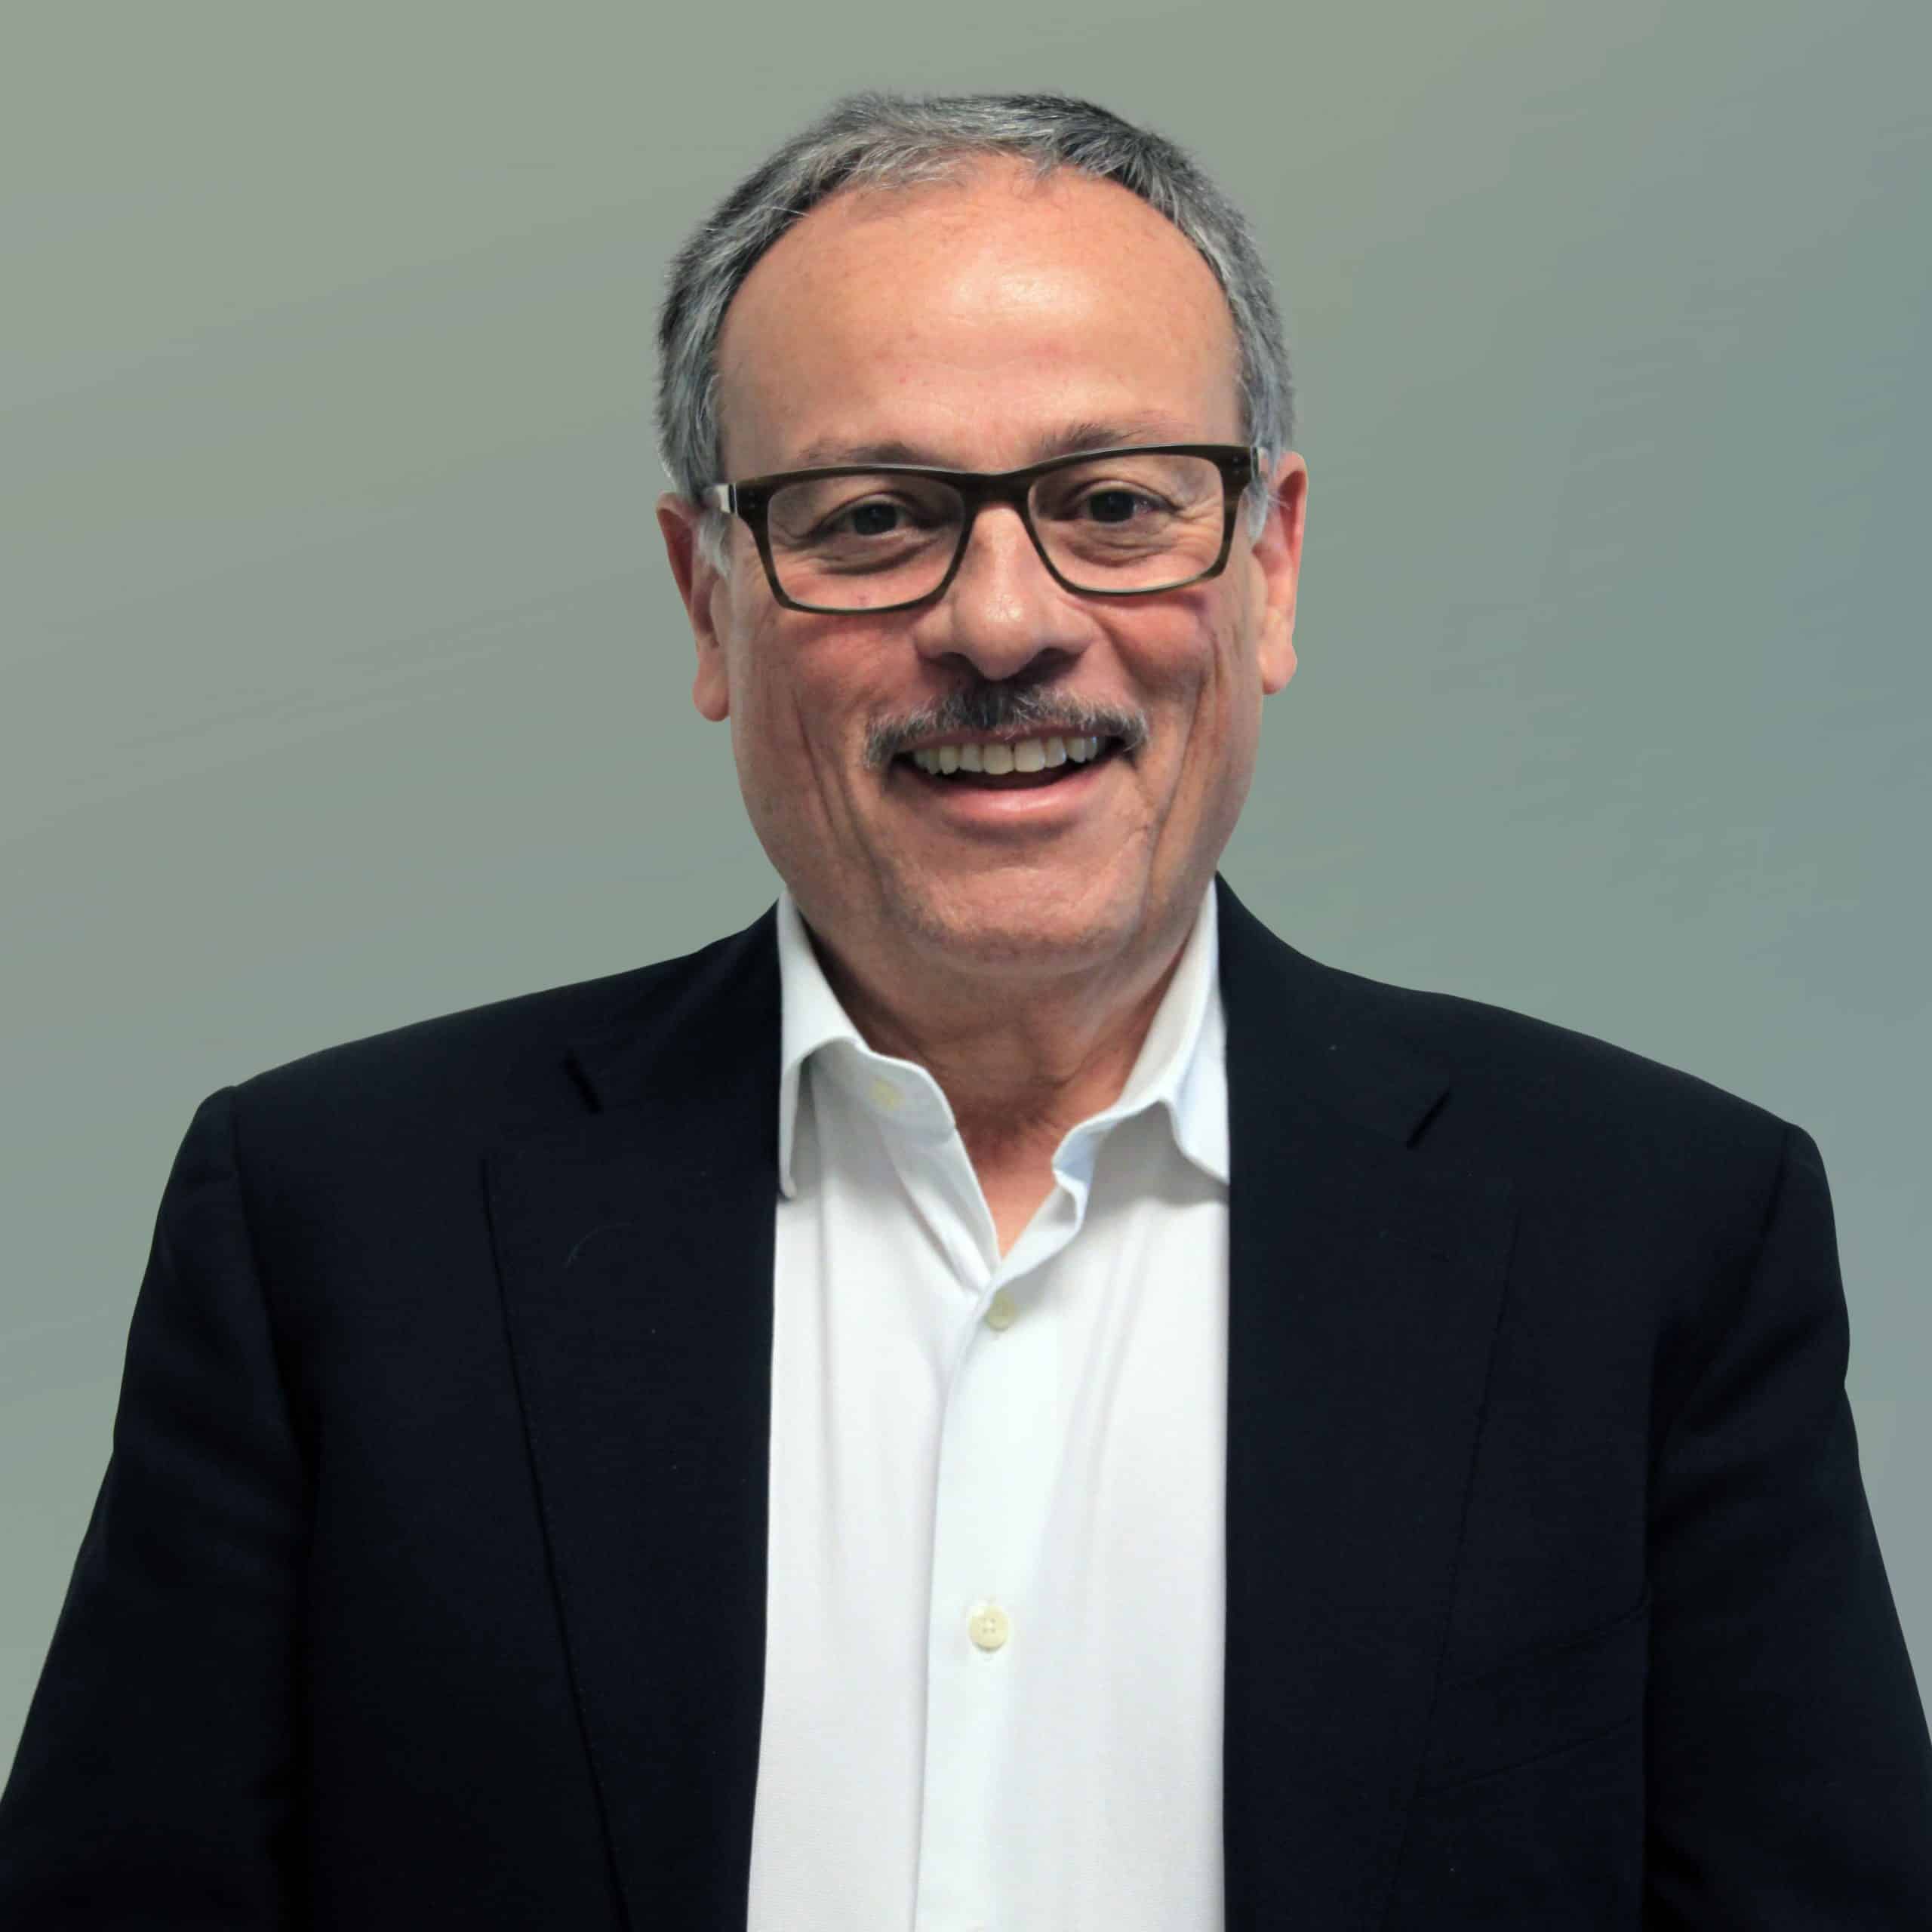 Dan Perez, CEO